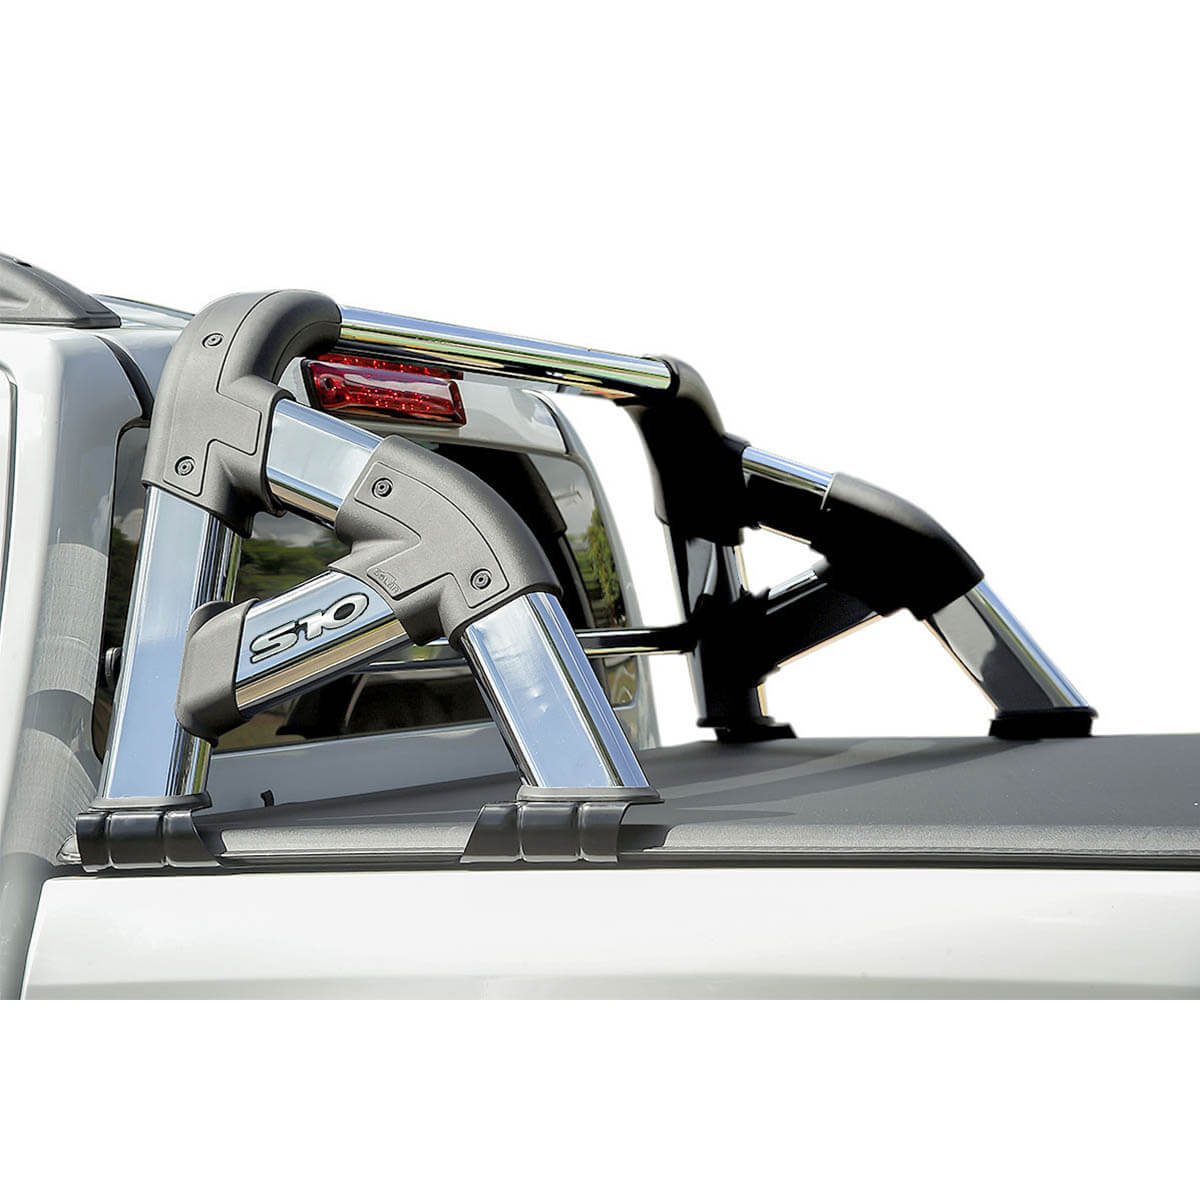 Santo antônio Solar Exclusive cromado S10 cabine dupla 2012 a 2022 com barra de vidro